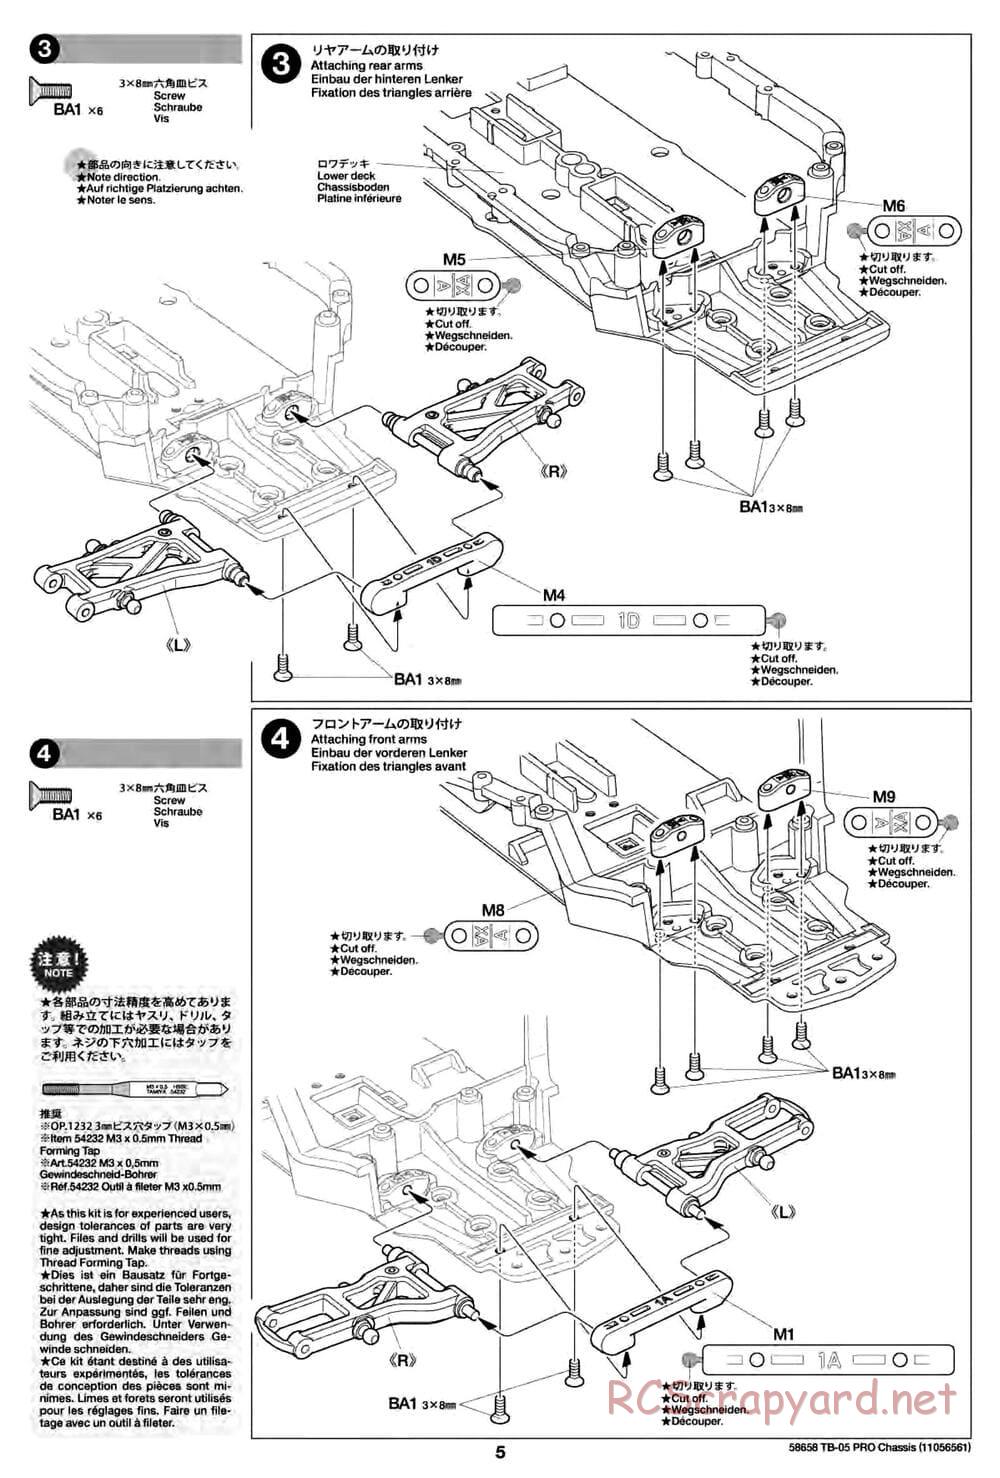 Tamiya - TB-05 Pro Chassis - Manual - Page 5